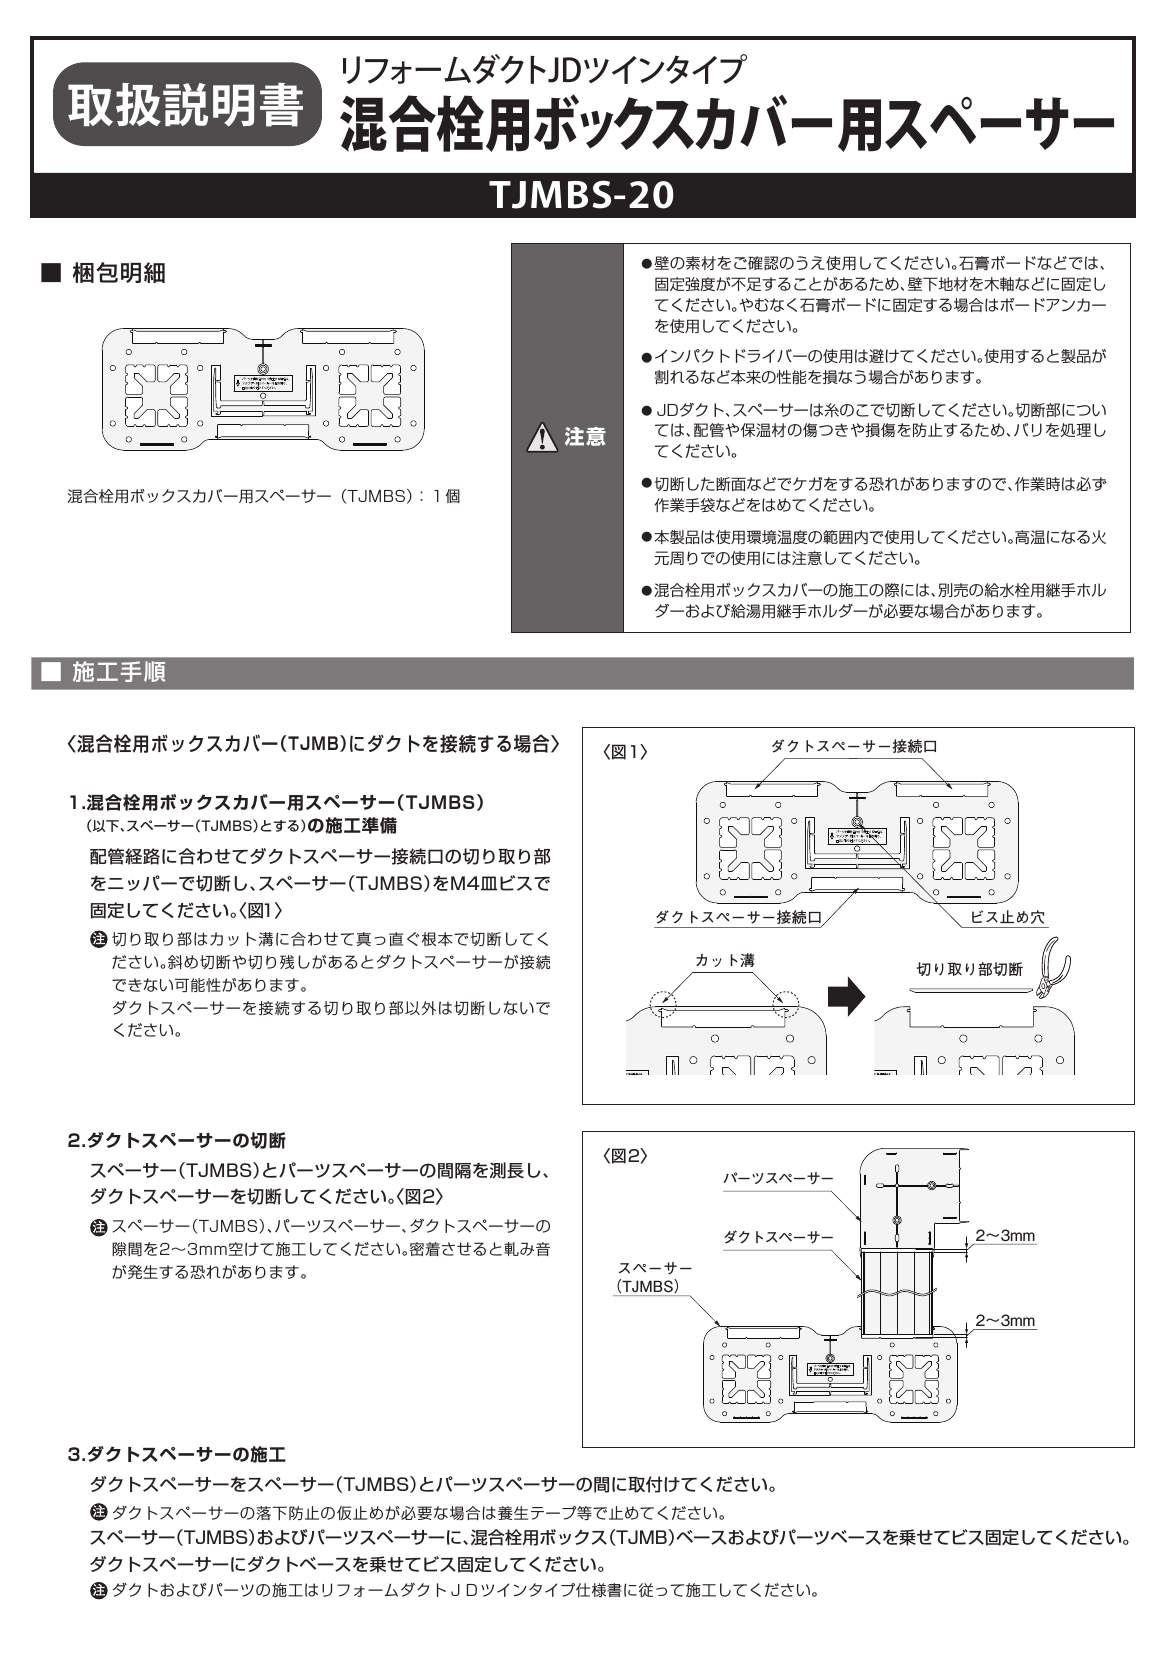 TJMBS_取扱説明書_20190401-00_A5W.pdf